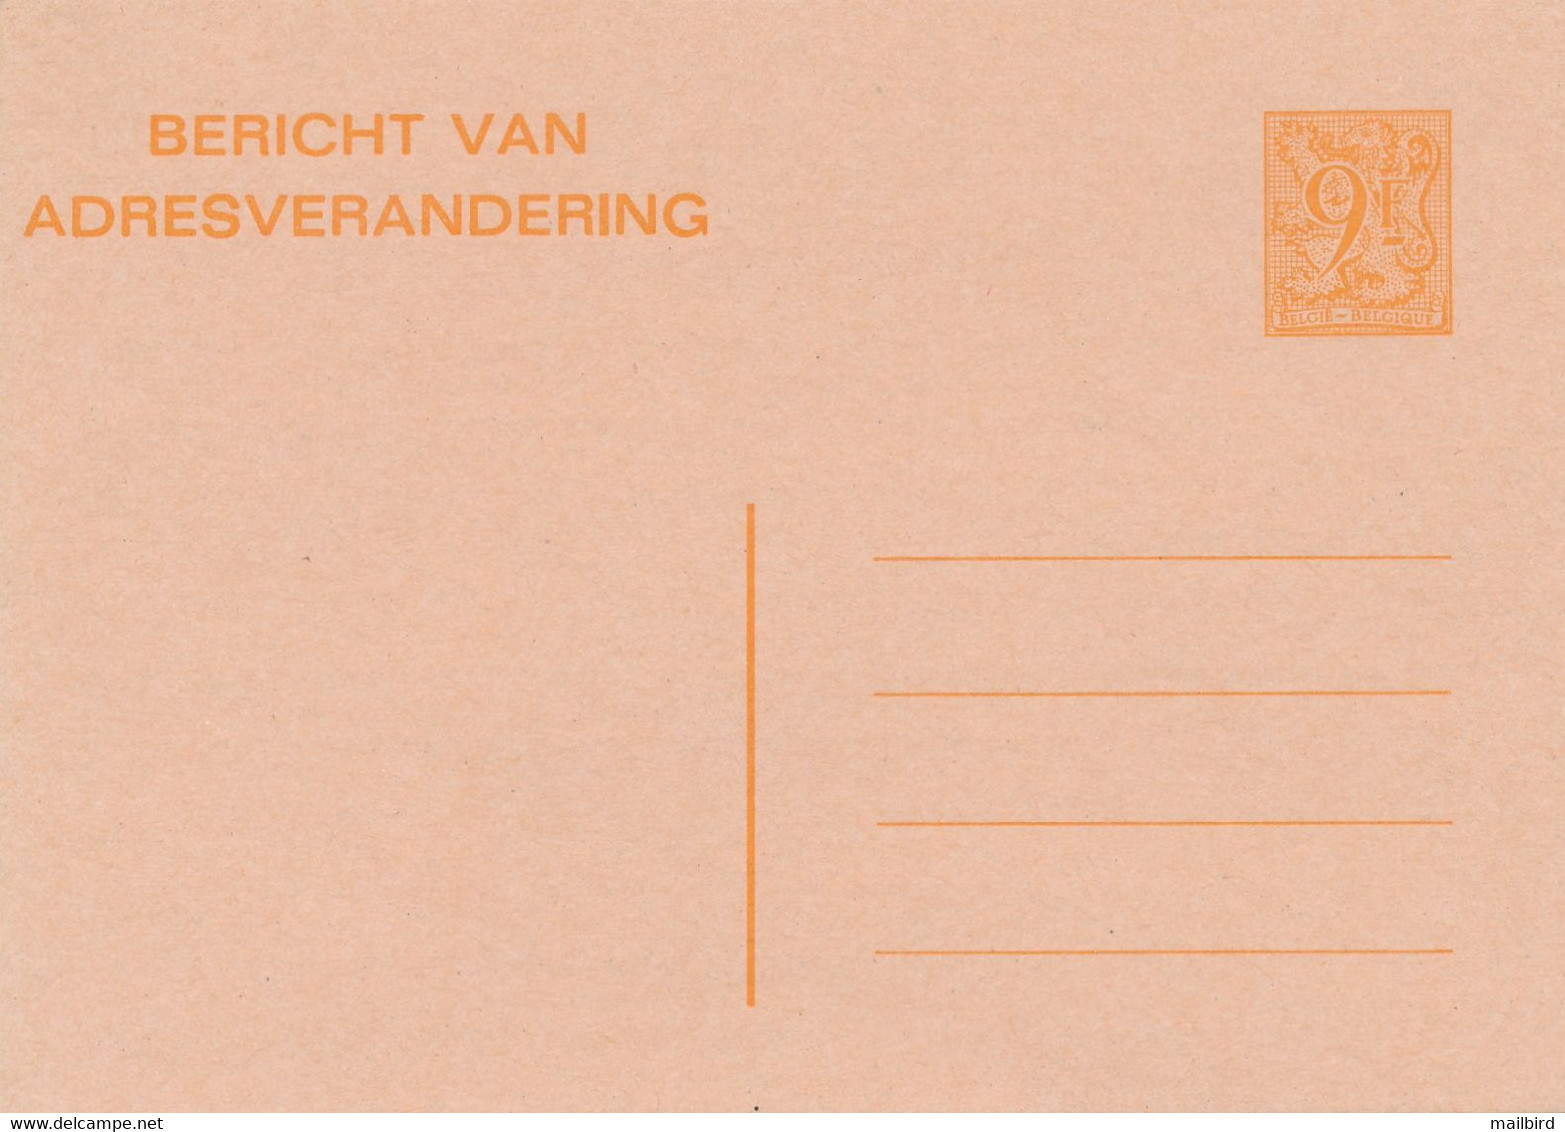 CA/AV 26 F- 9,00fr Orange/oranje -Avis De Changement D'Adresse/Bericht Van Adresverandering-1985- NEUF / NIEUW - Adreswijziging